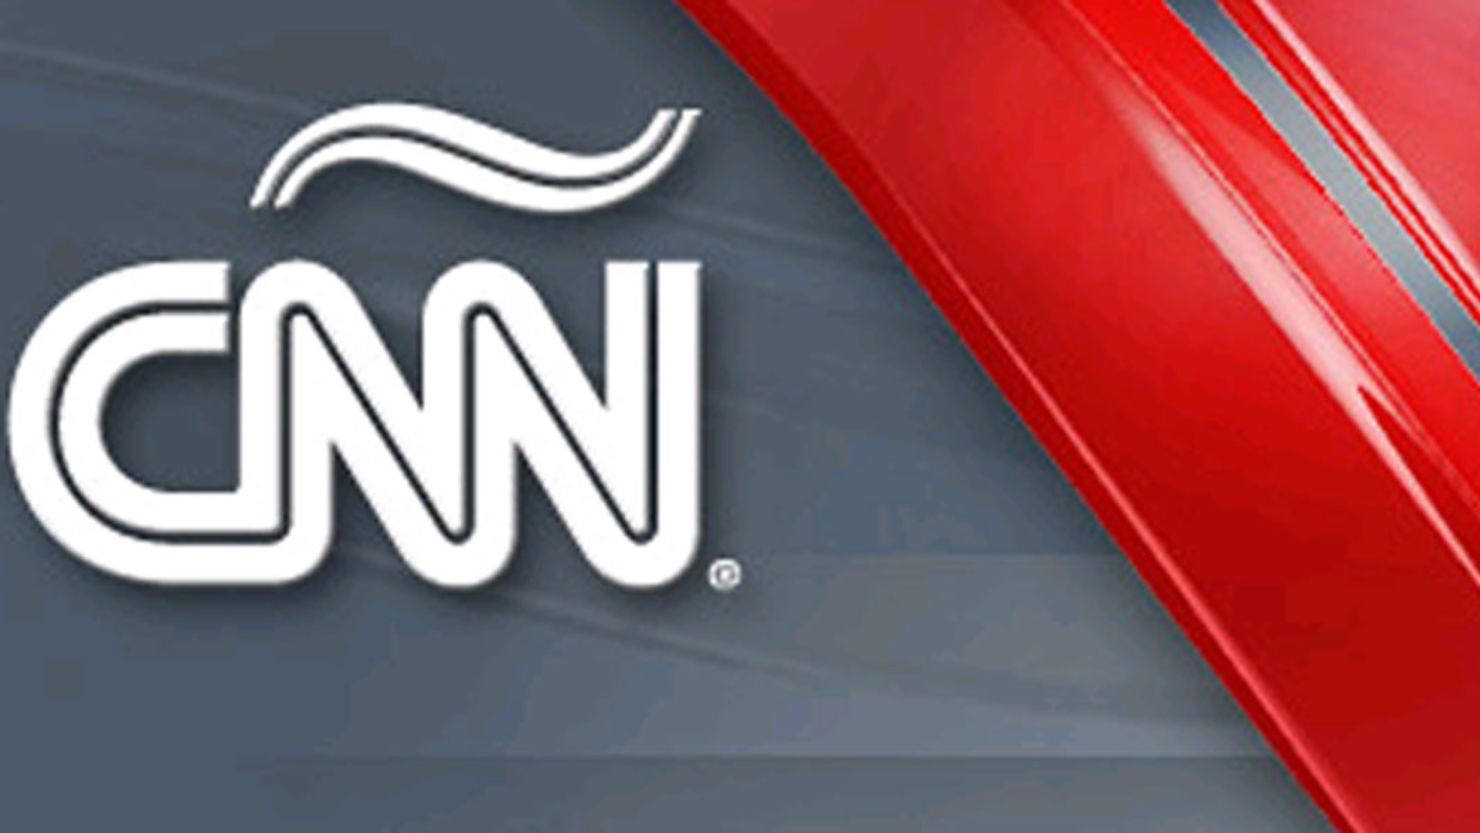 CNN Espanol